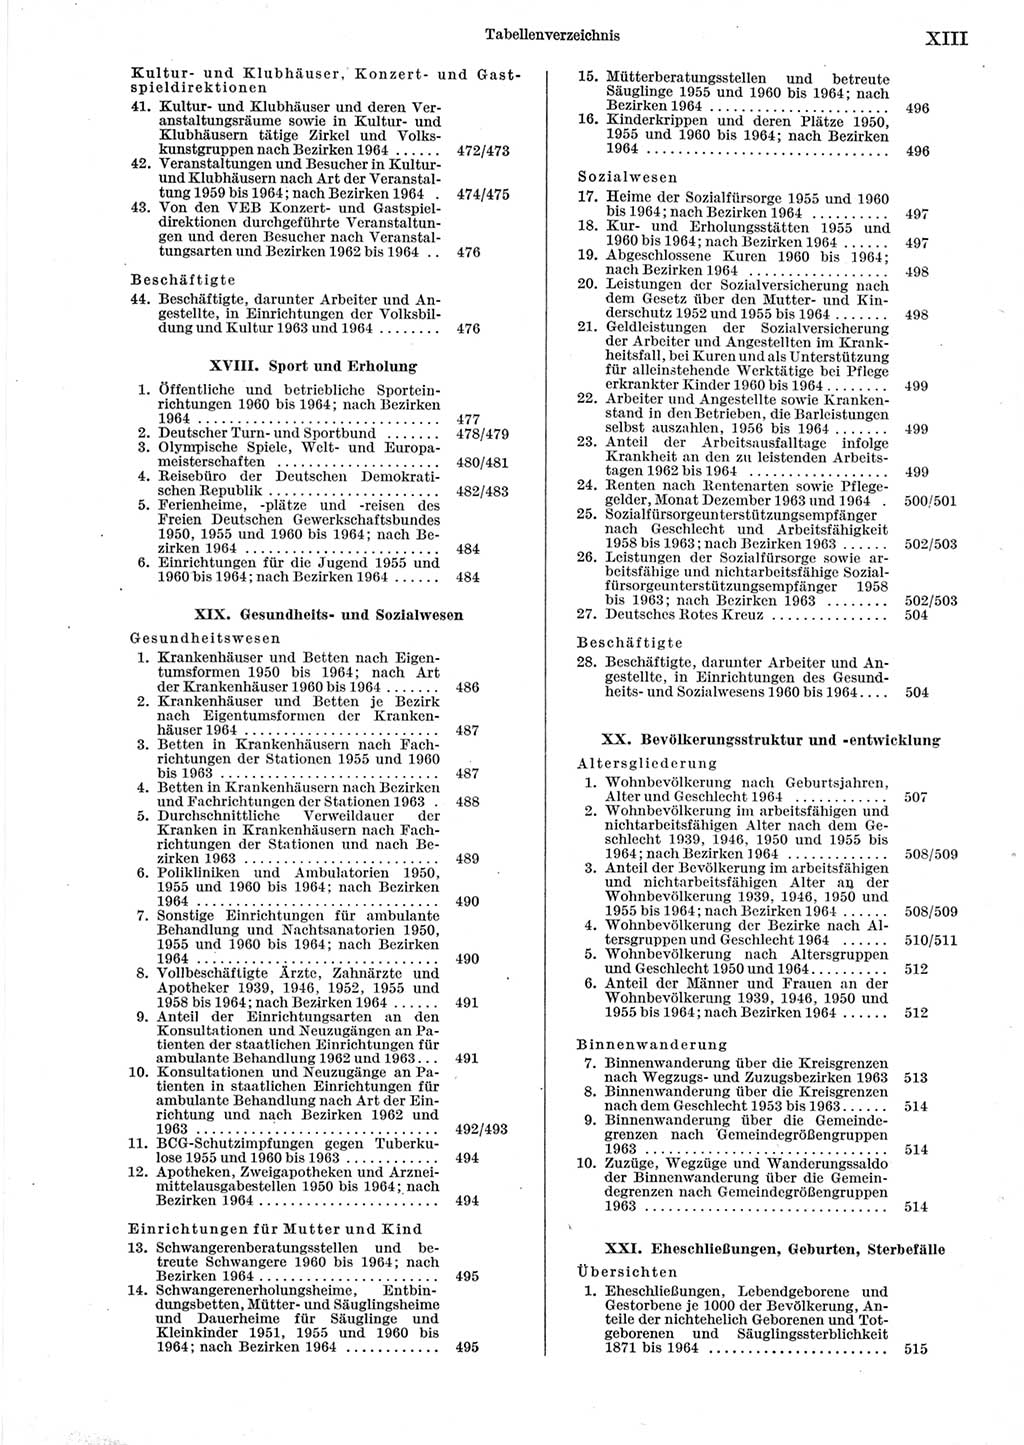 Statistisches Jahrbuch der Deutschen Demokratischen Republik (DDR) 1965, Seite 13 (Stat. Jb. DDR 1965, S. 13)